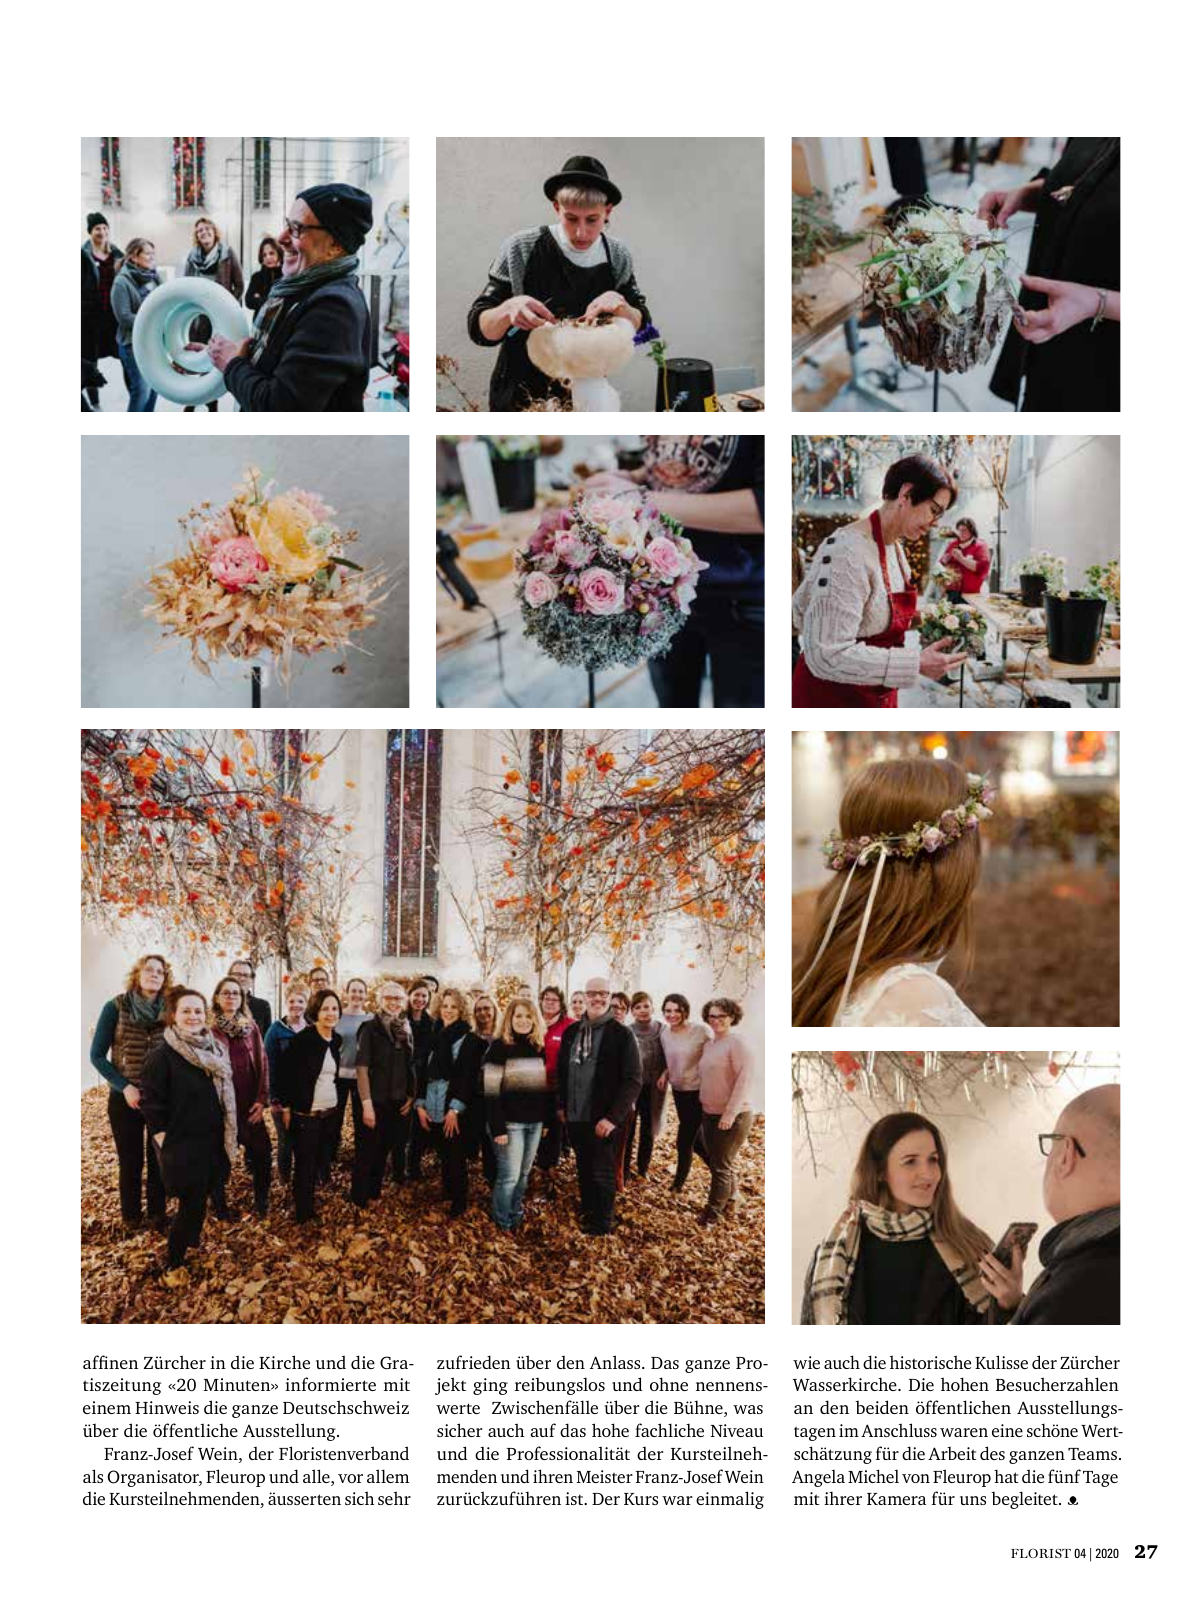 Vorschau Florist - Ausgabe April 2020 Seite 25